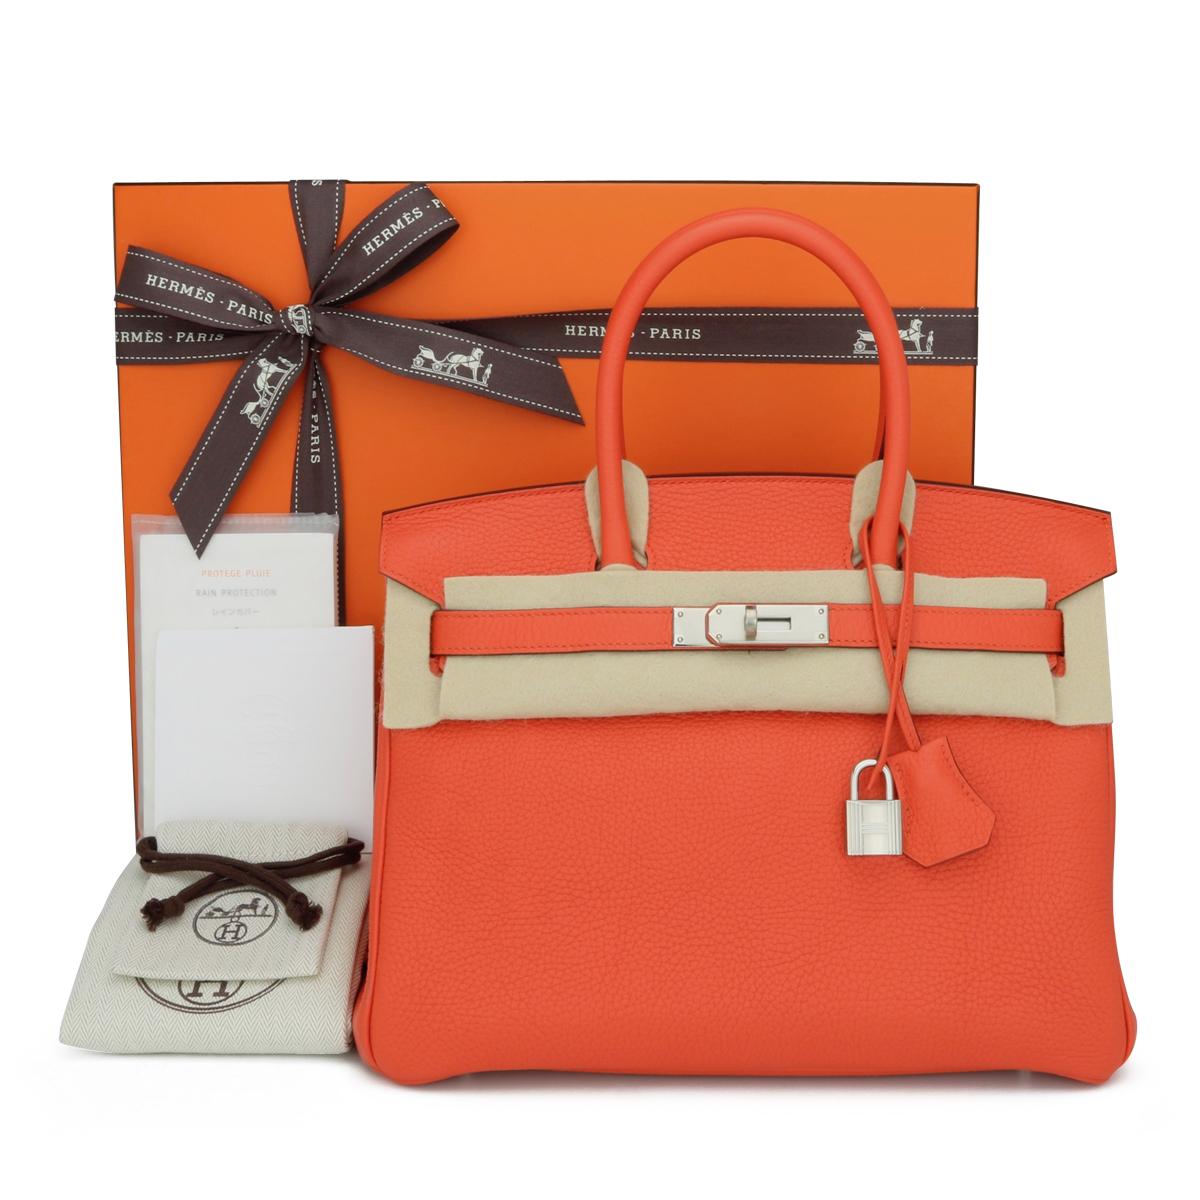 Hermès Birkin Bag 30cm Mohn Orange Togo Leder mit Palladium Hardware Stempel T_Jahr 2015.

Diese Tasche ist noch in sehr gutem Zustand. Das Leder riecht noch frisch und hat seine ursprüngliche Form beibehalten. Die Hardware ist immer noch sehr